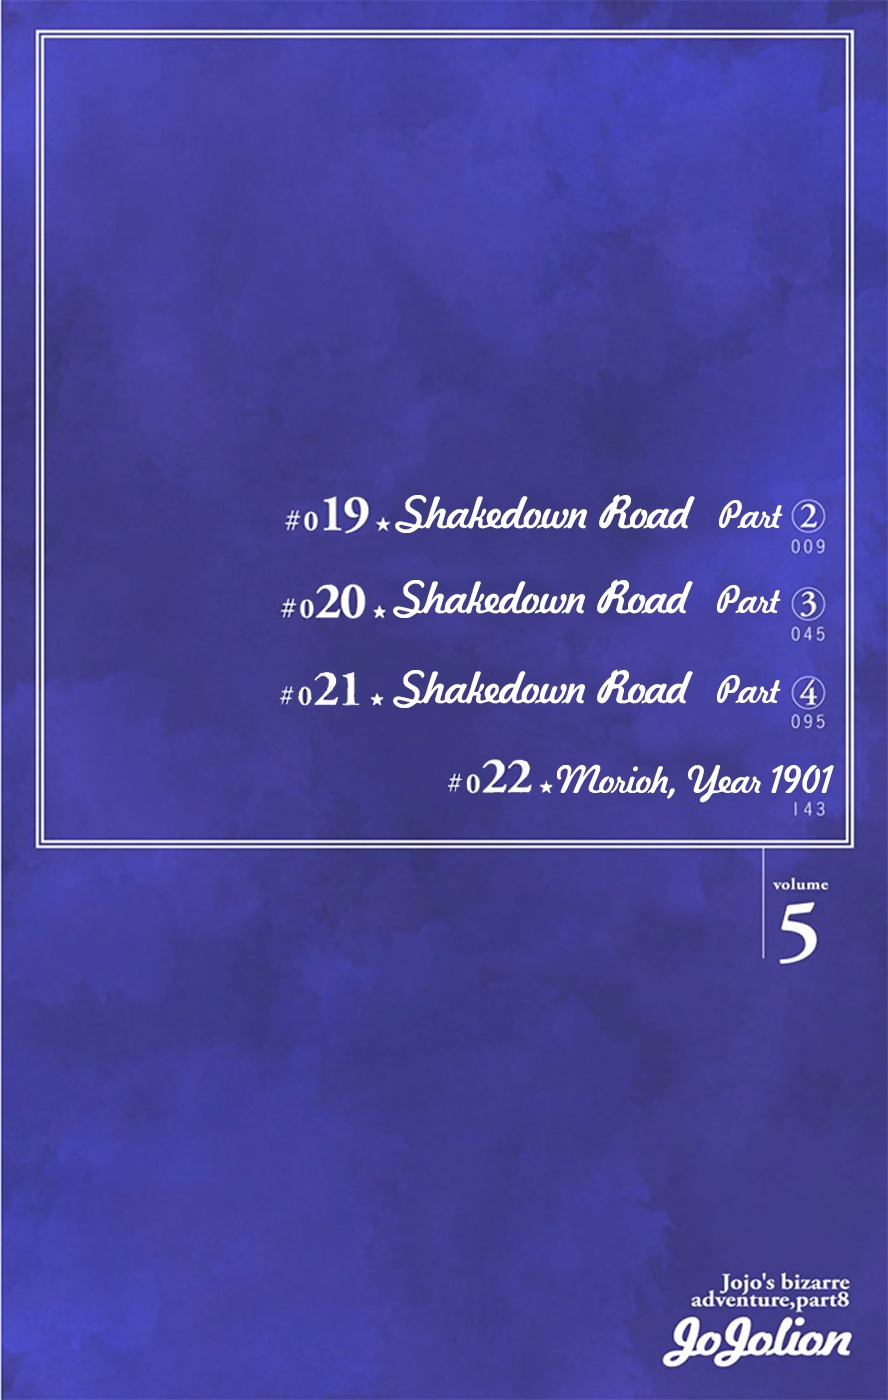 JoJo's Bizarre Adventure Part 8 JoJolion [Official Colored] Vol. 5 Ch. 19 Shakedown Road Part 2